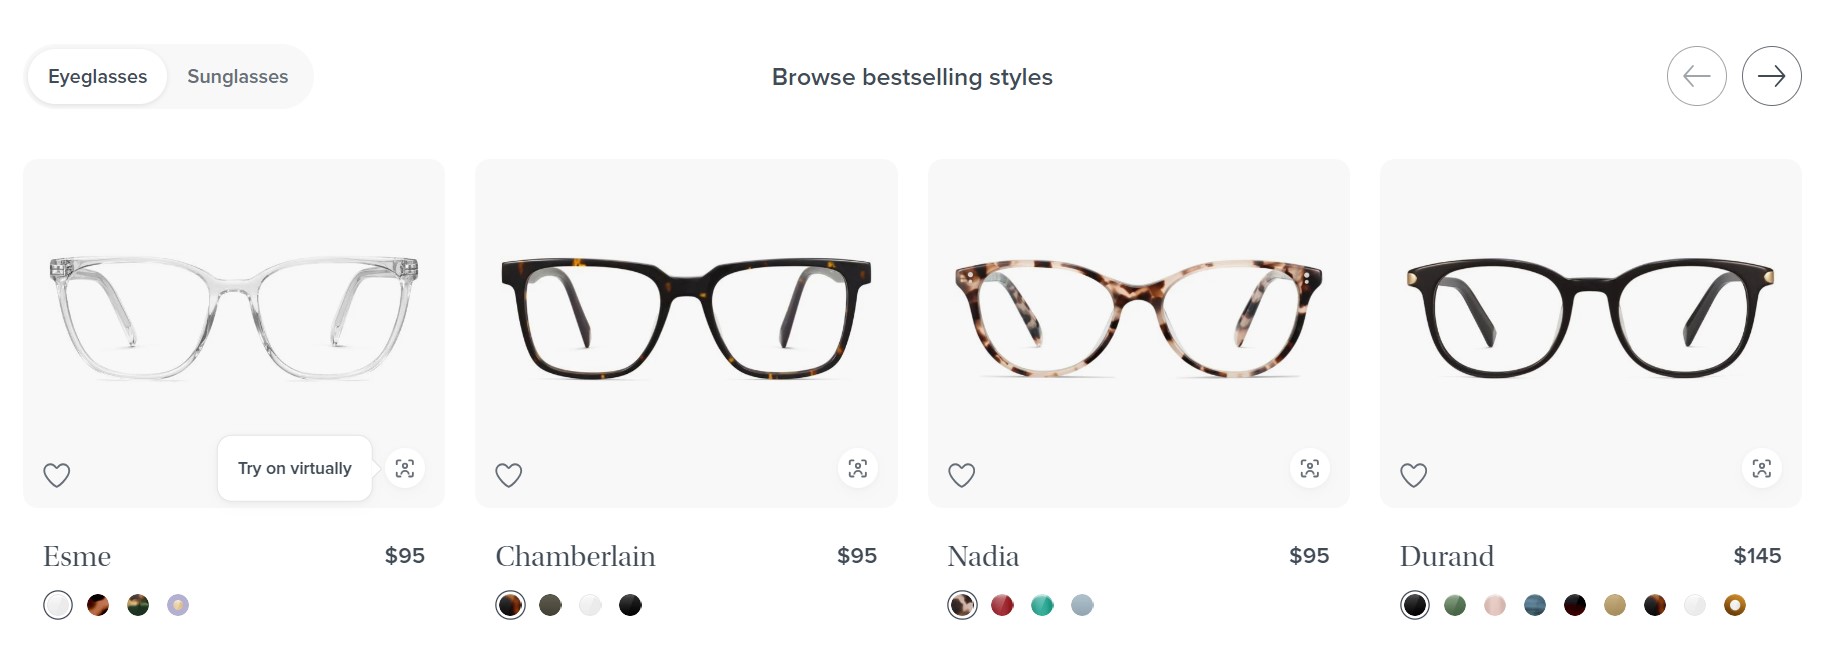 Ejemplos de estrategias de distribución de empresas reales: Warby Parker